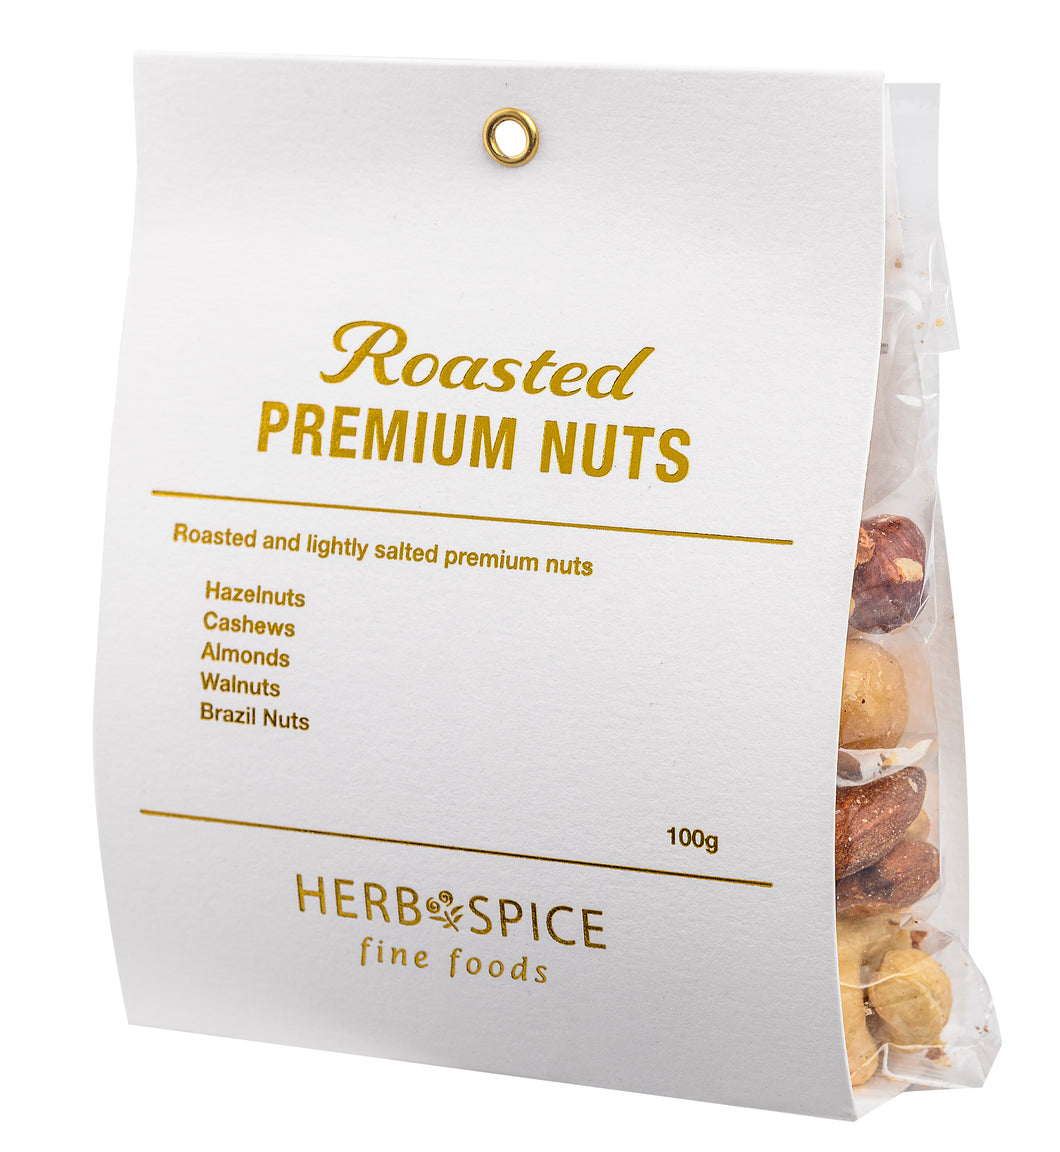 Roasted Premium Nuts